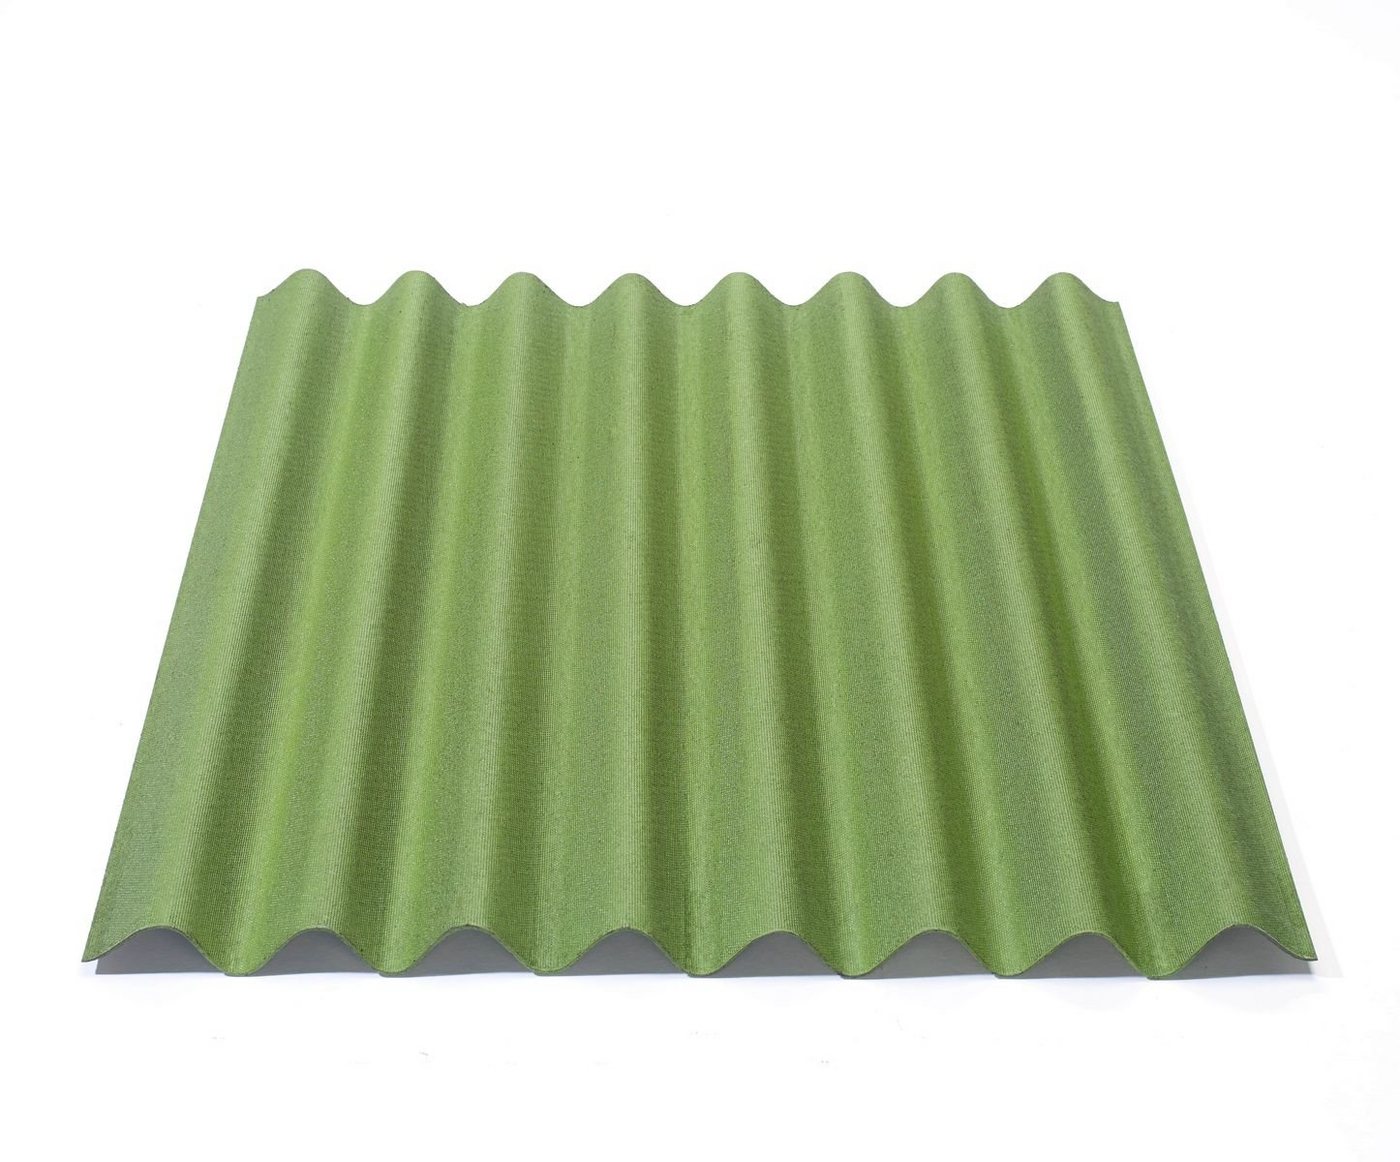 Onduline Dachpappe Onduline Easyline Dachplatte Wandplatte Bitumenwellplatten Wellplatte 1x0,76m - grün, wellig, 0.76 m² pro Paket, (1-St) von Onduline